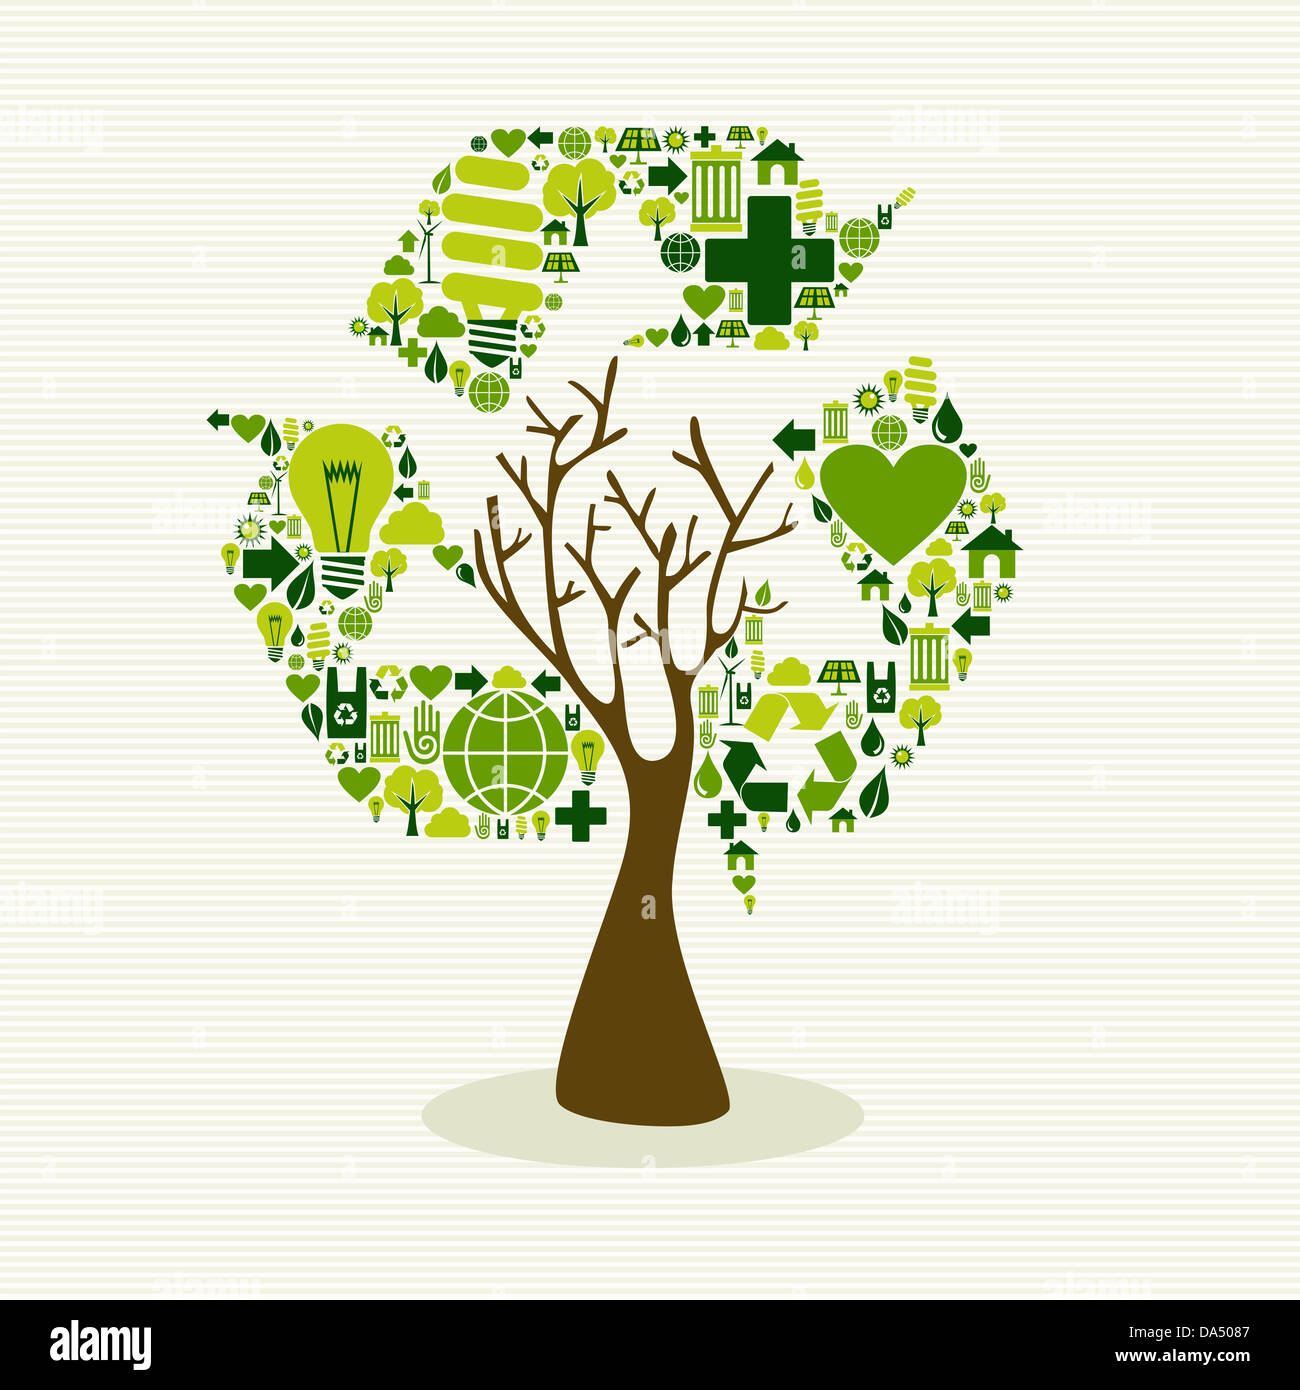 Speichern Sie die Erde Baum Idee mit Icons Set. Diese Abbildung ist für einfache Handhabung und individuelle Färbung geschichtet. Stockfoto